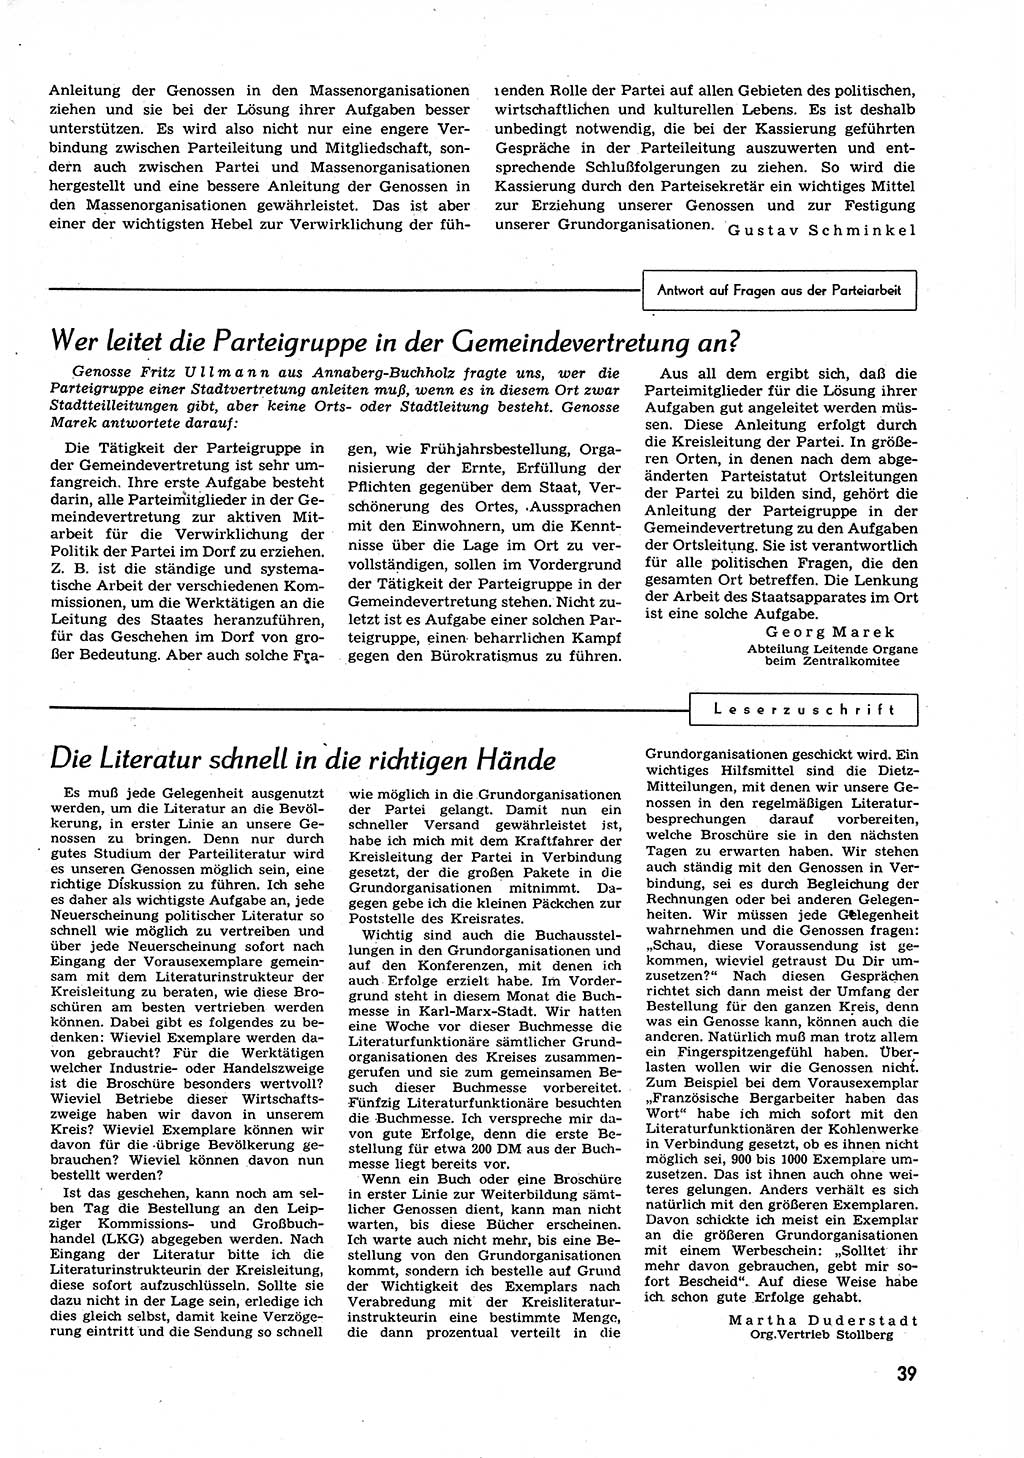 Neuer Weg (NW), Organ des Zentralkomitees (ZK) der SED (Sozialistische Einheitspartei Deutschlands) für alle Parteiarbeiter, 9. Jahrgang [Deutsche Demokratische Republik (DDR)] 1954, Heft 12/39 (NW ZK SED DDR 1954, H. 12/39)